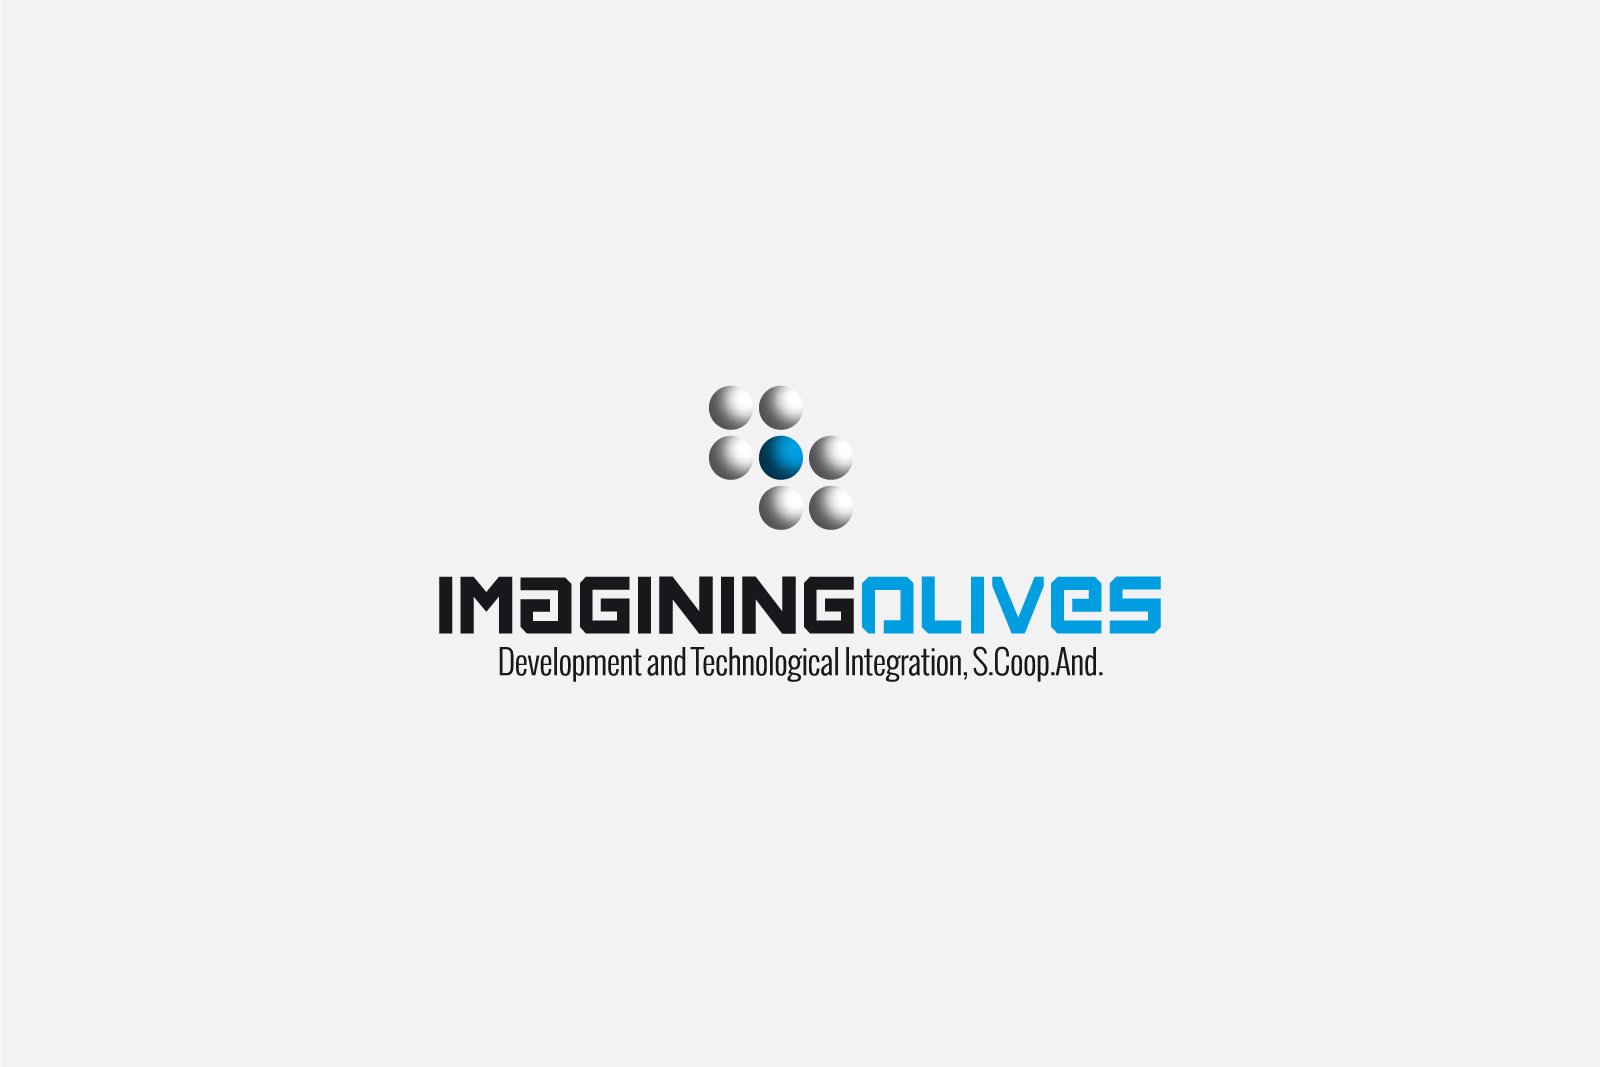 diseño de logotipo imagining olives